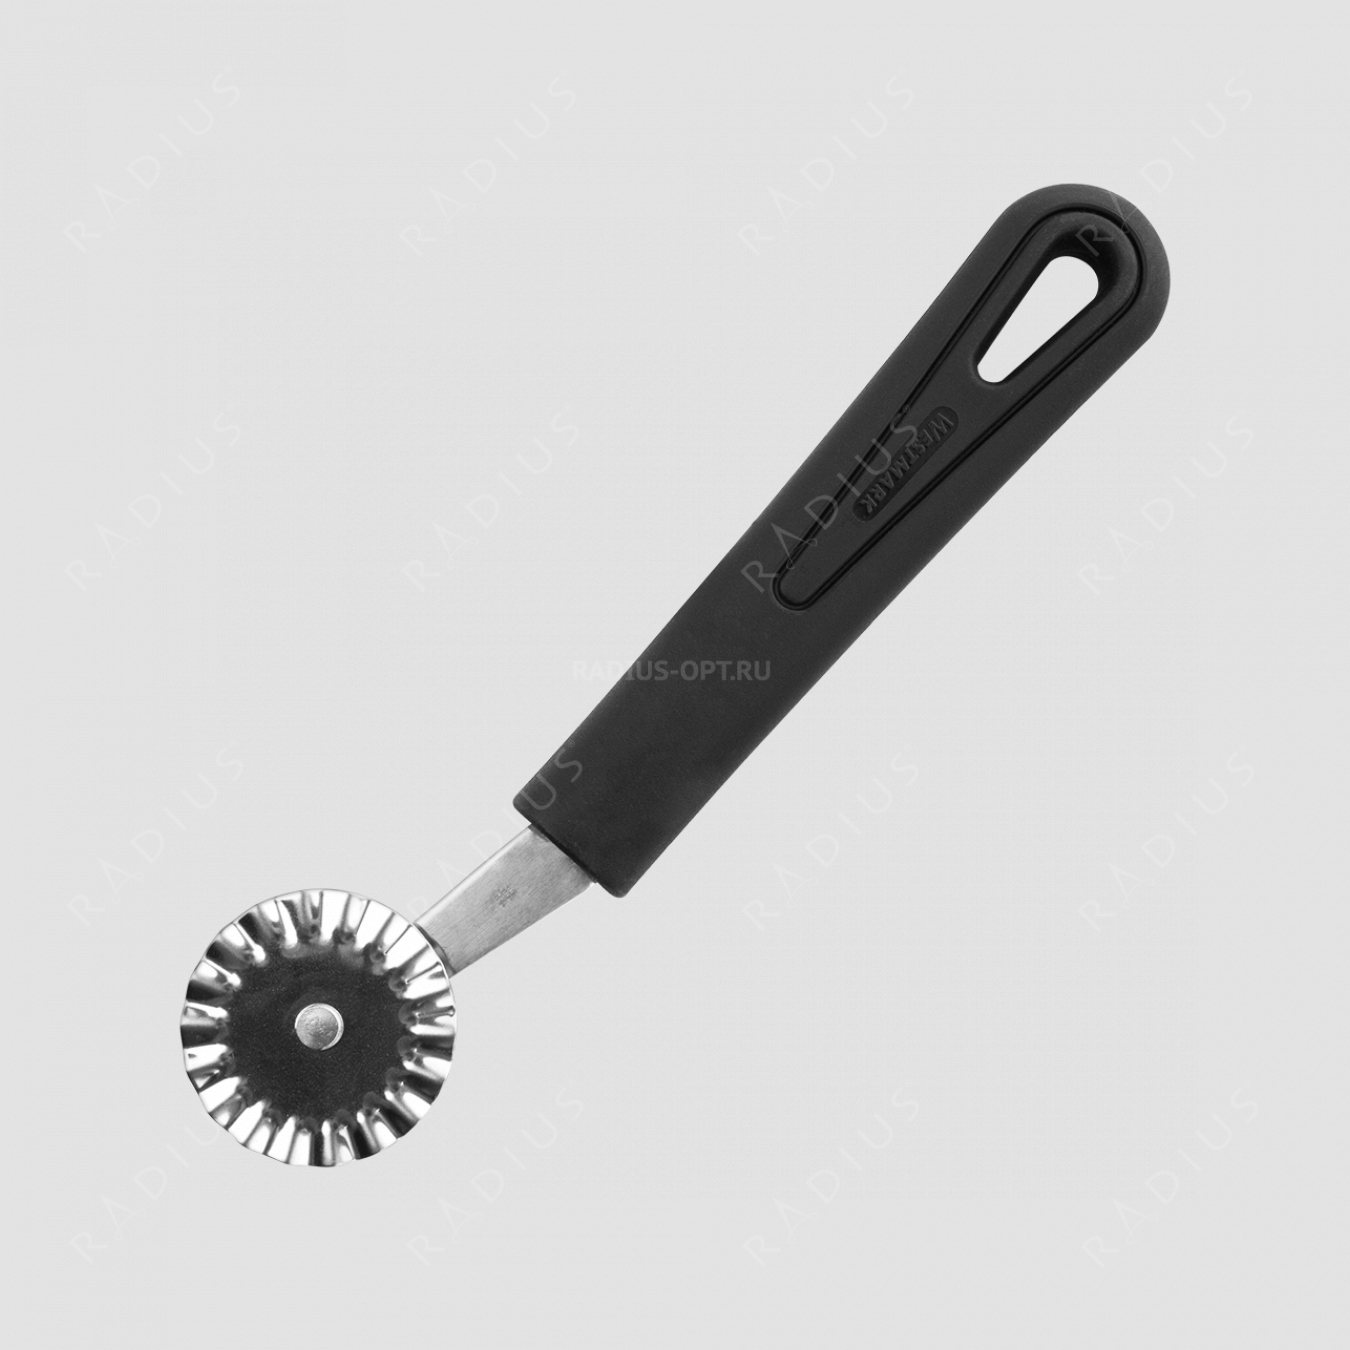 Нож для теста фигурный, серия Gentle, Westmark, Германия